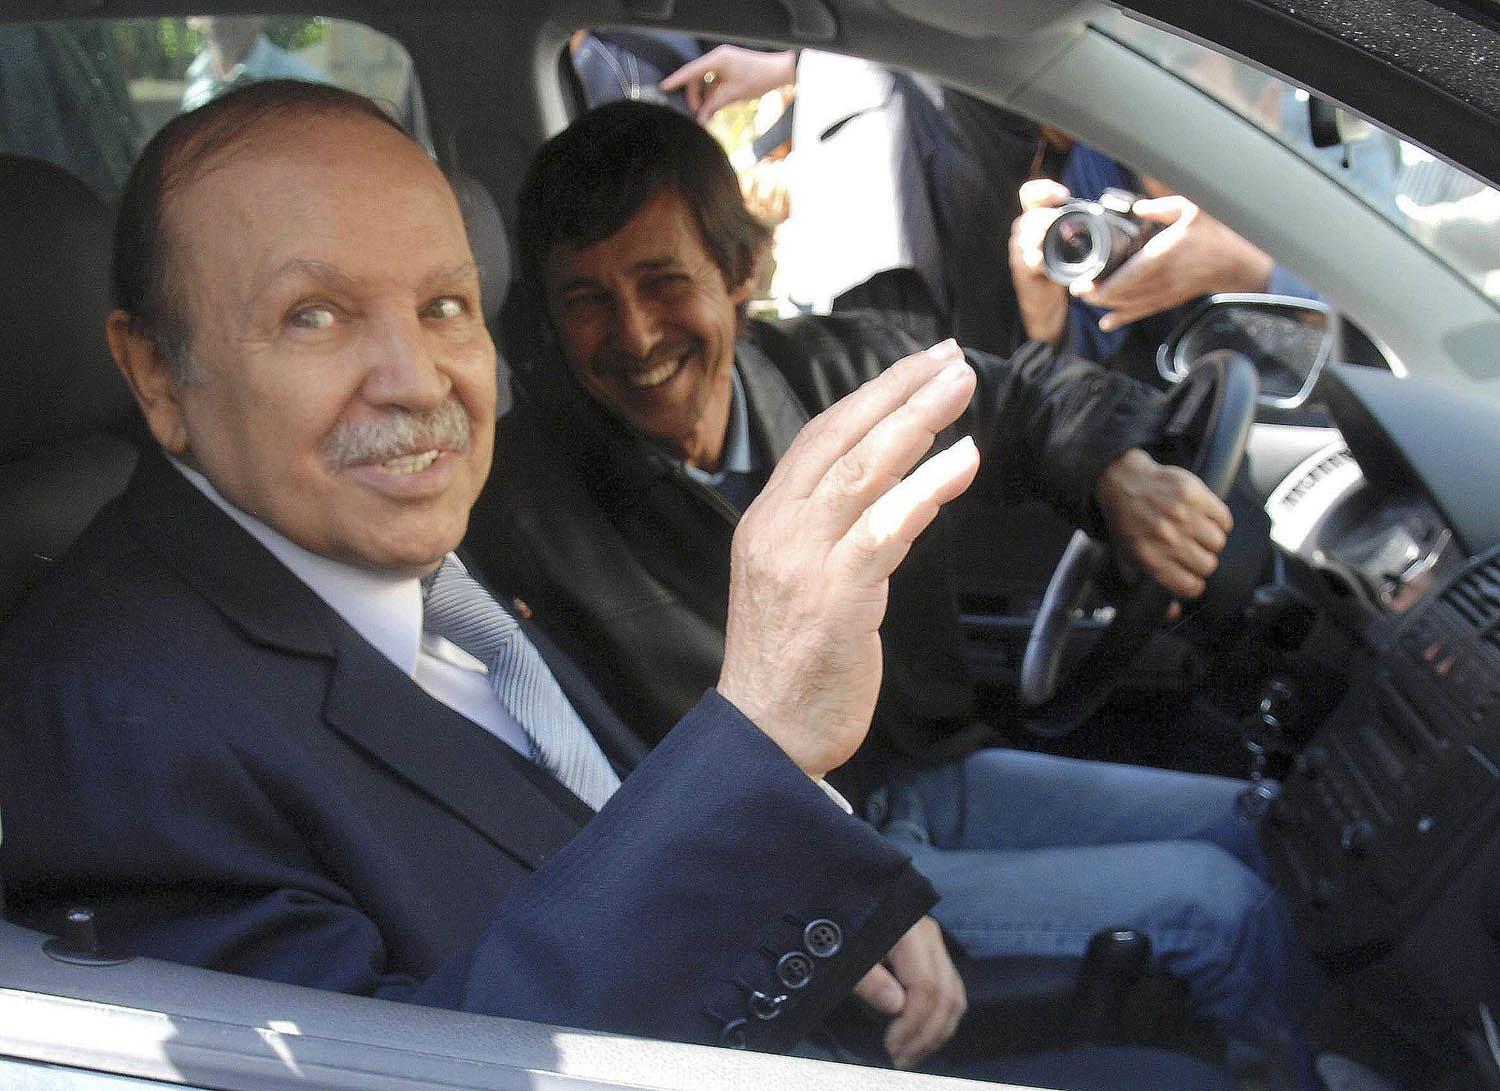 الرئيس الجزائري المتنحي عبدالعزيز بوتفليقة وأخوه سعيد في شوارع الجزائر